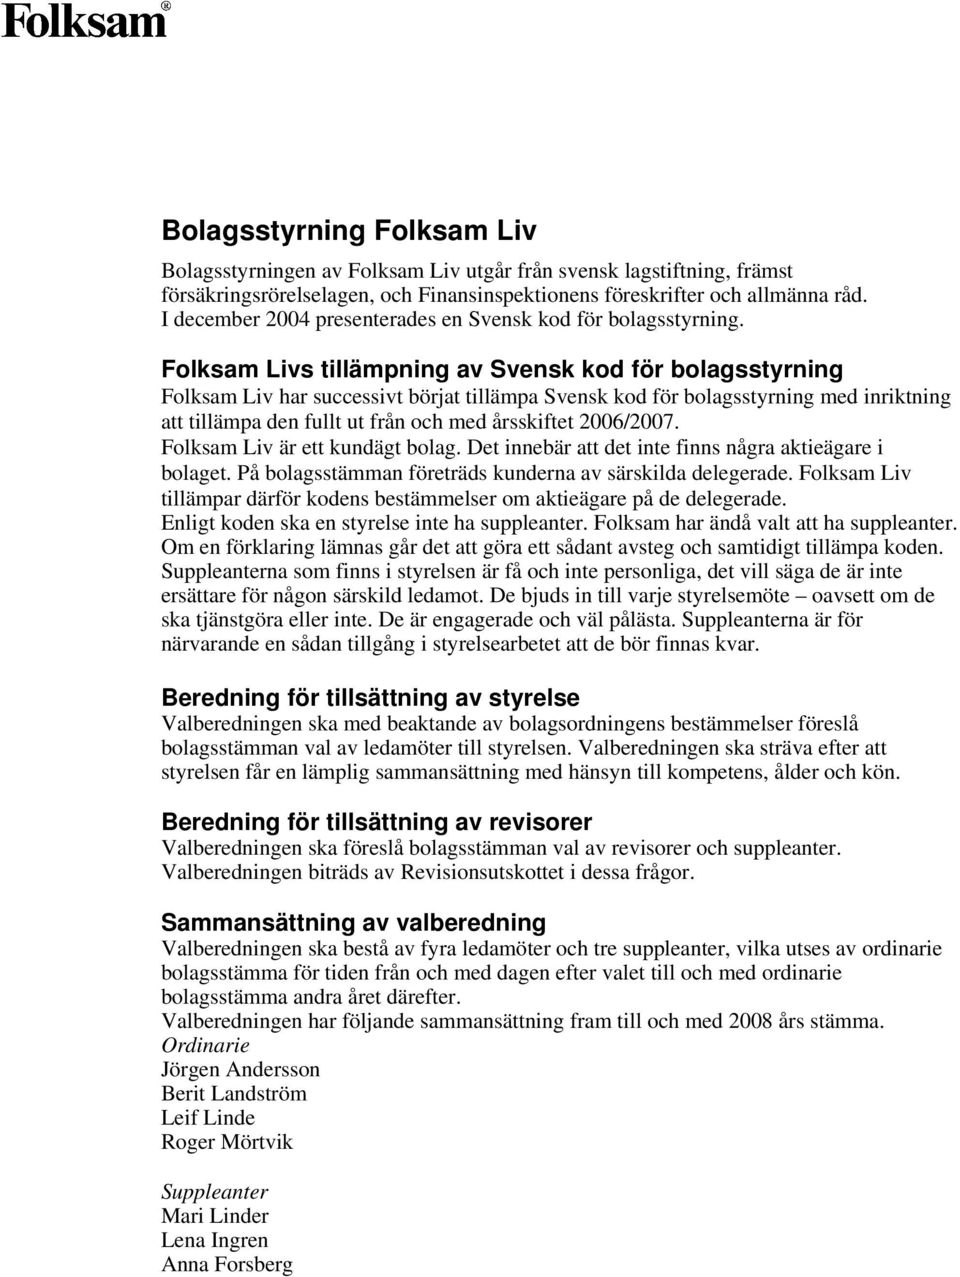 Folksam Livs tillämpning av Svensk kod för bolagsstyrning Folksam Liv har successivt börjat tillämpa Svensk kod för bolagsstyrning med inriktning att tillämpa den fullt ut från och med årsskiftet